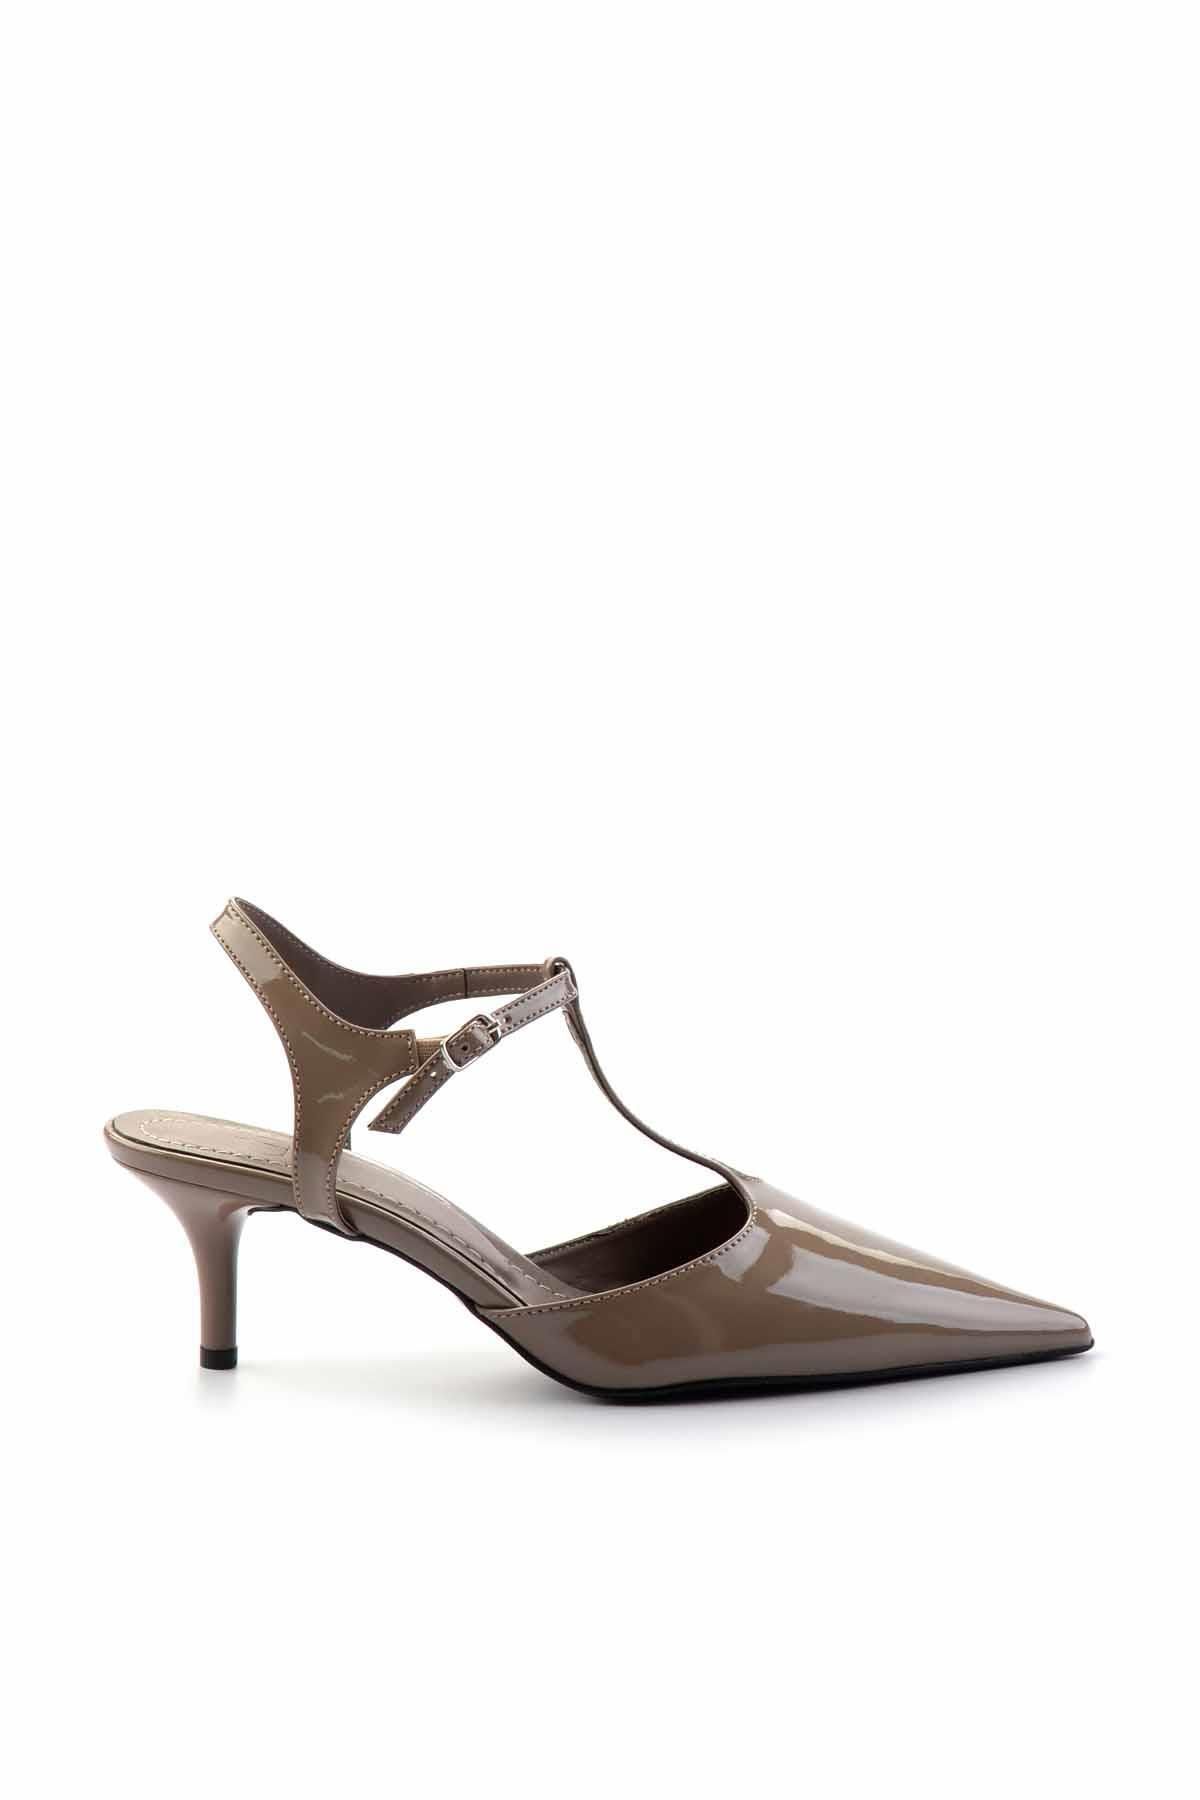 Bambi Vizon Rugan  Kadın Klasik Topuklu Ayakkabı K01461110208